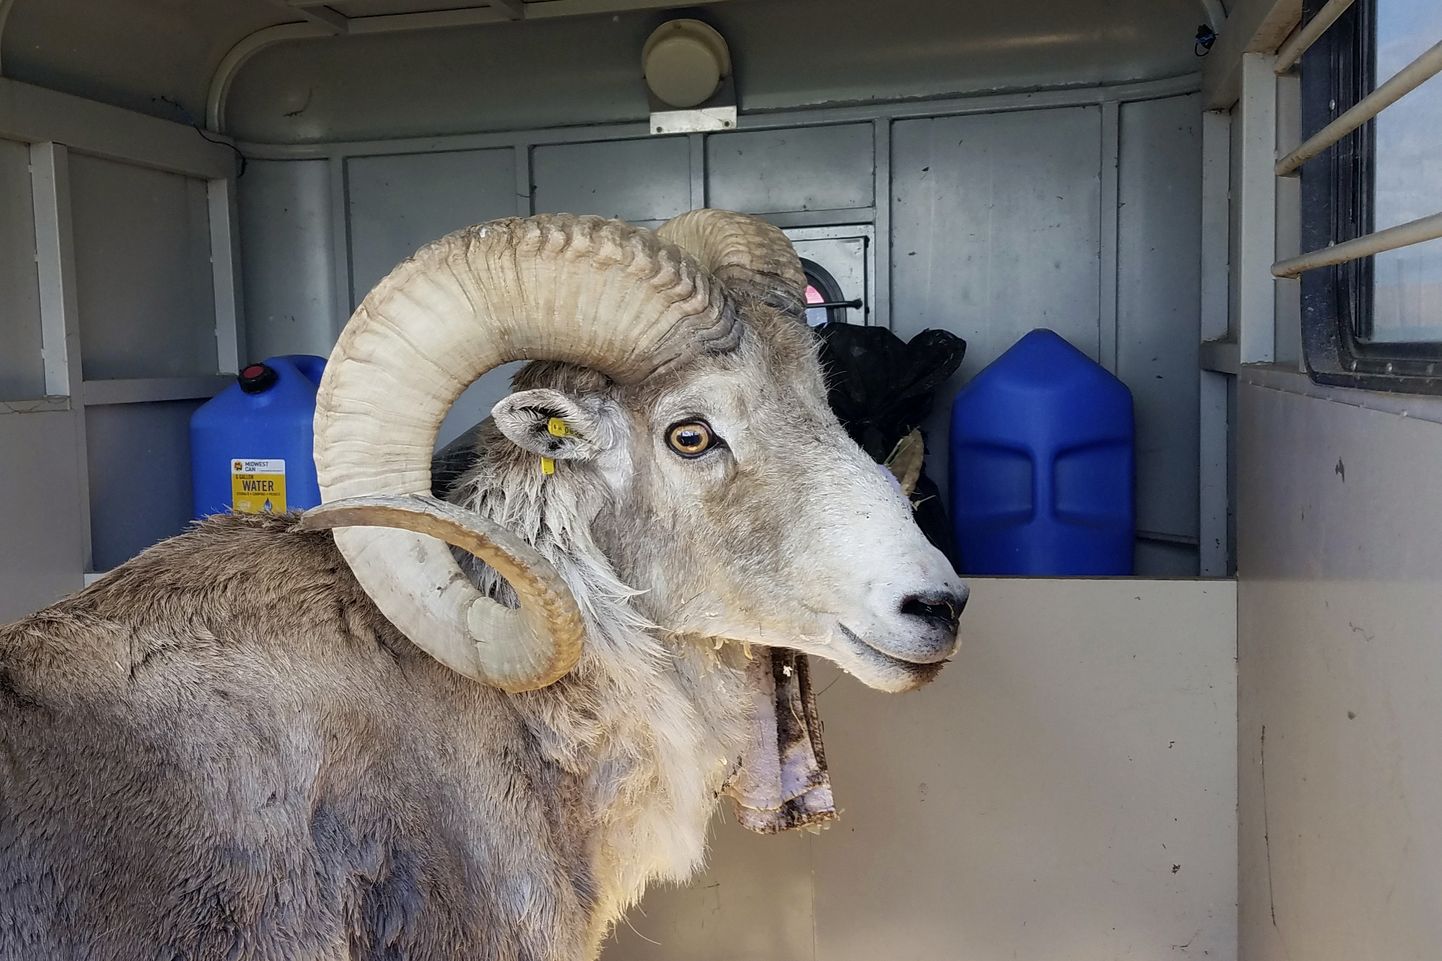 Selline näeb välja Montana Mäekuningas – varastatud geenitlisest materjalist ja keelatud moel loodud lammas. Selle looja sai karmilt karistada.